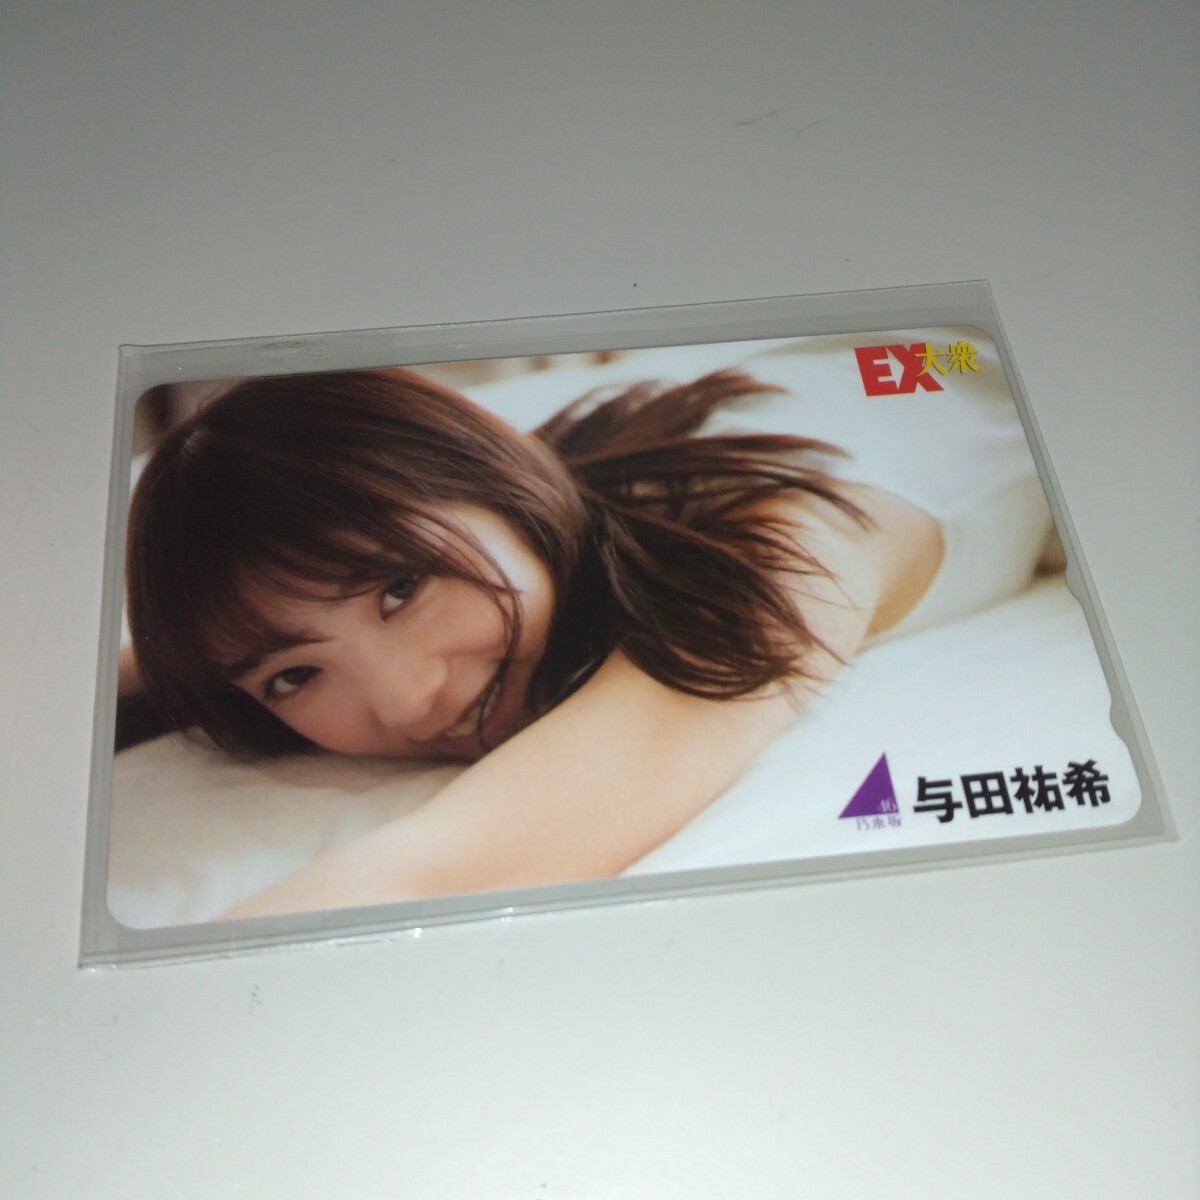 乃木坂46 EX大衆 与田祐希 テレホンカード テレフォンカード 未使用 N6040の画像1